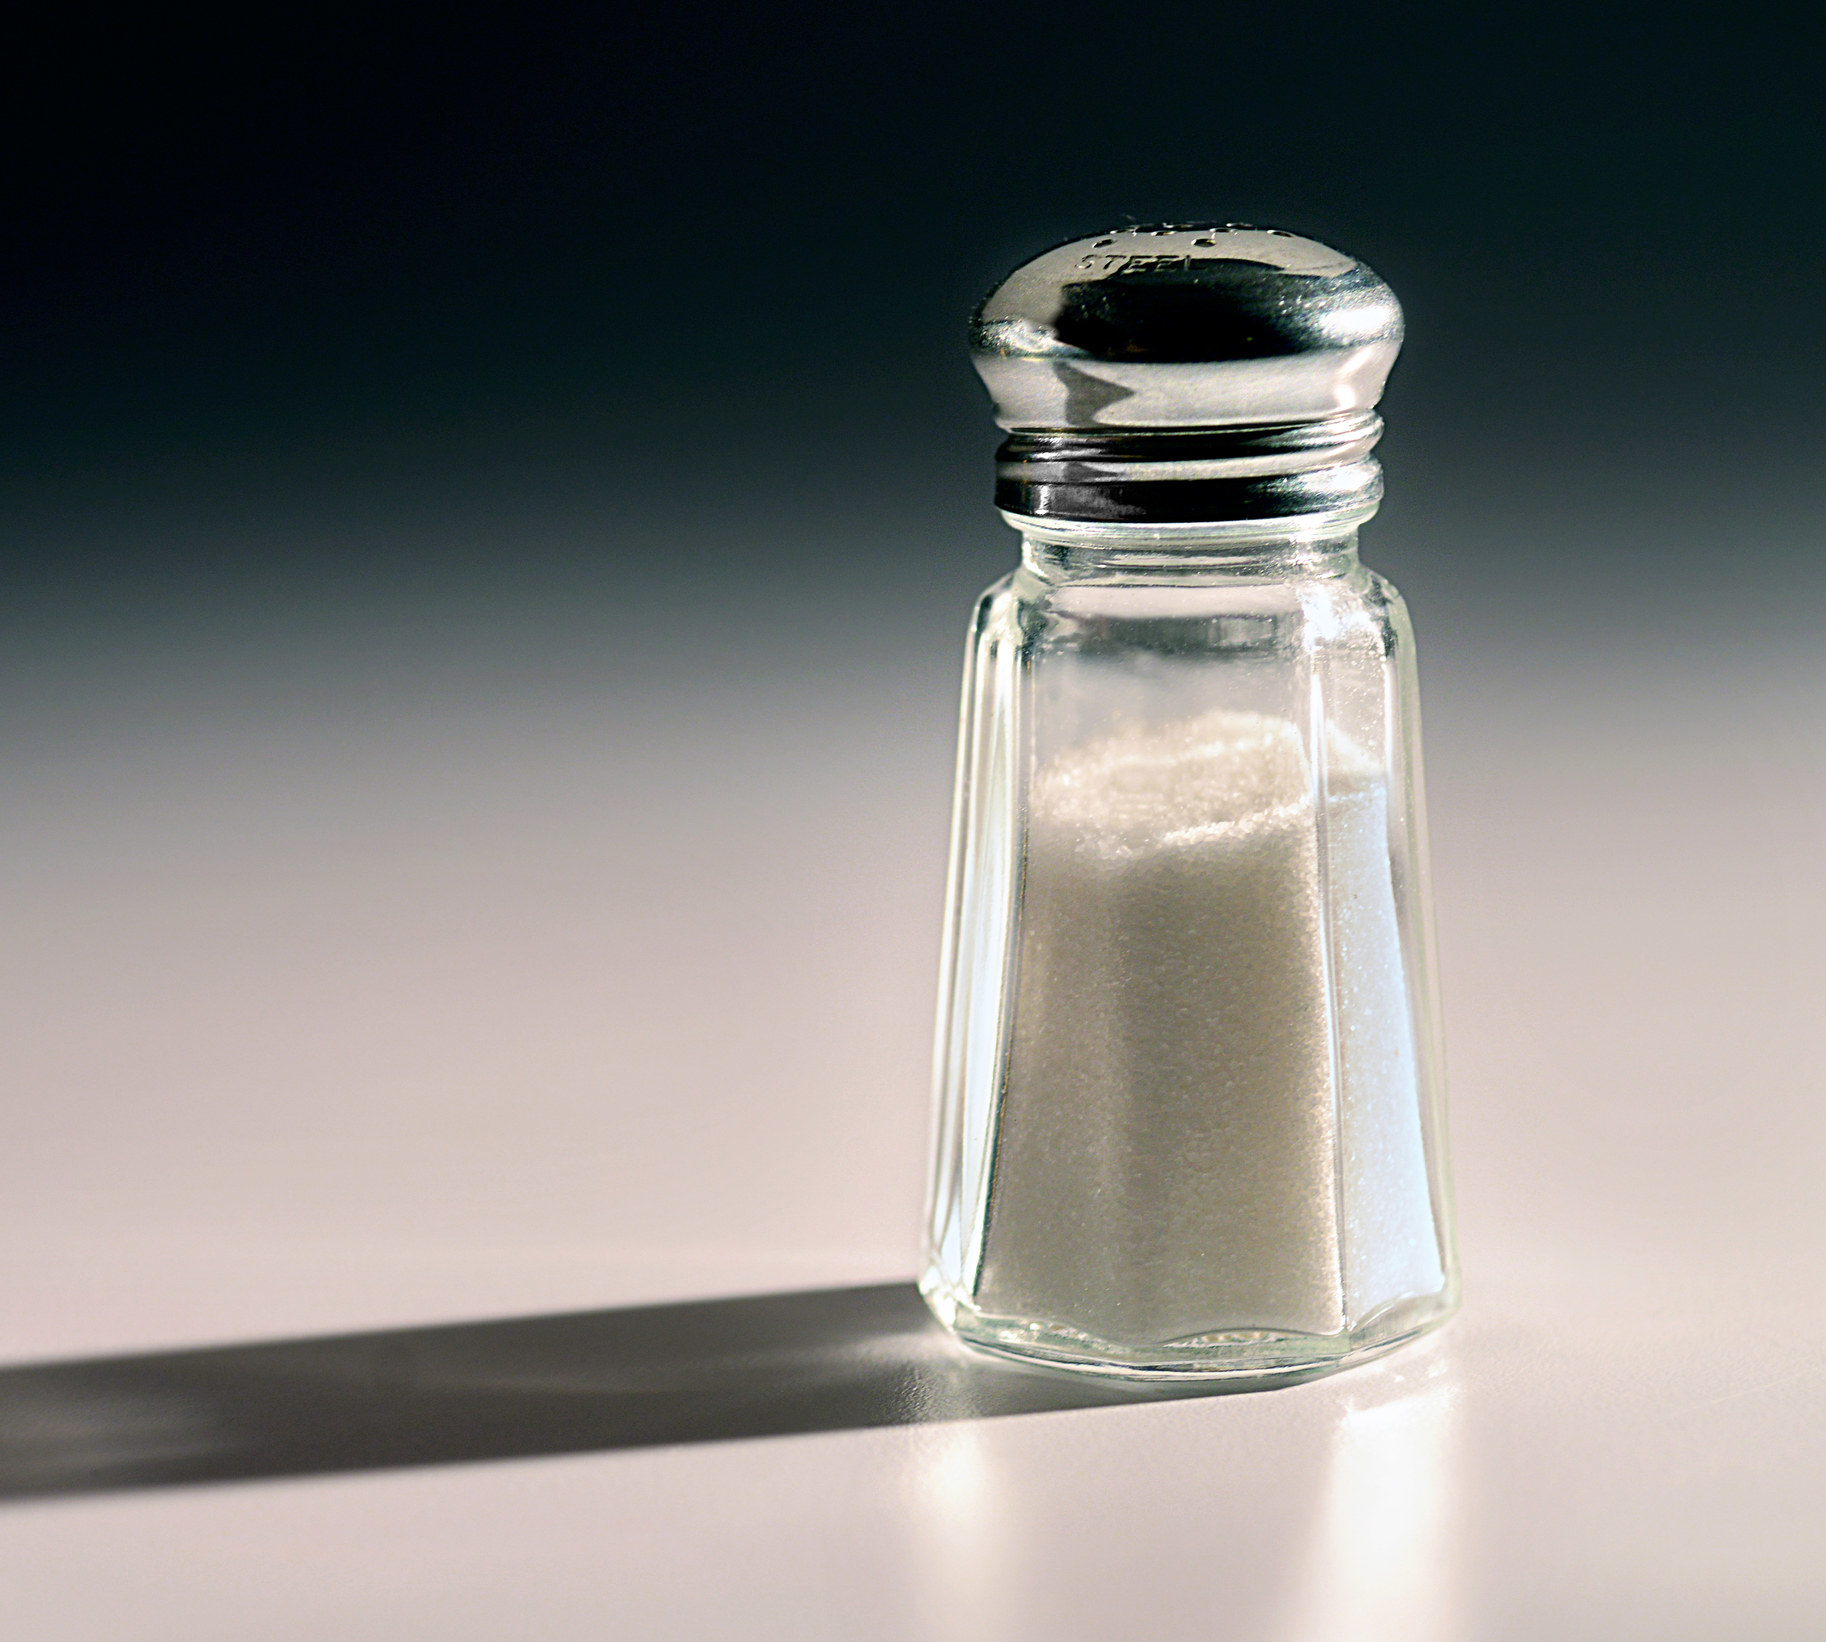 A salt shaker